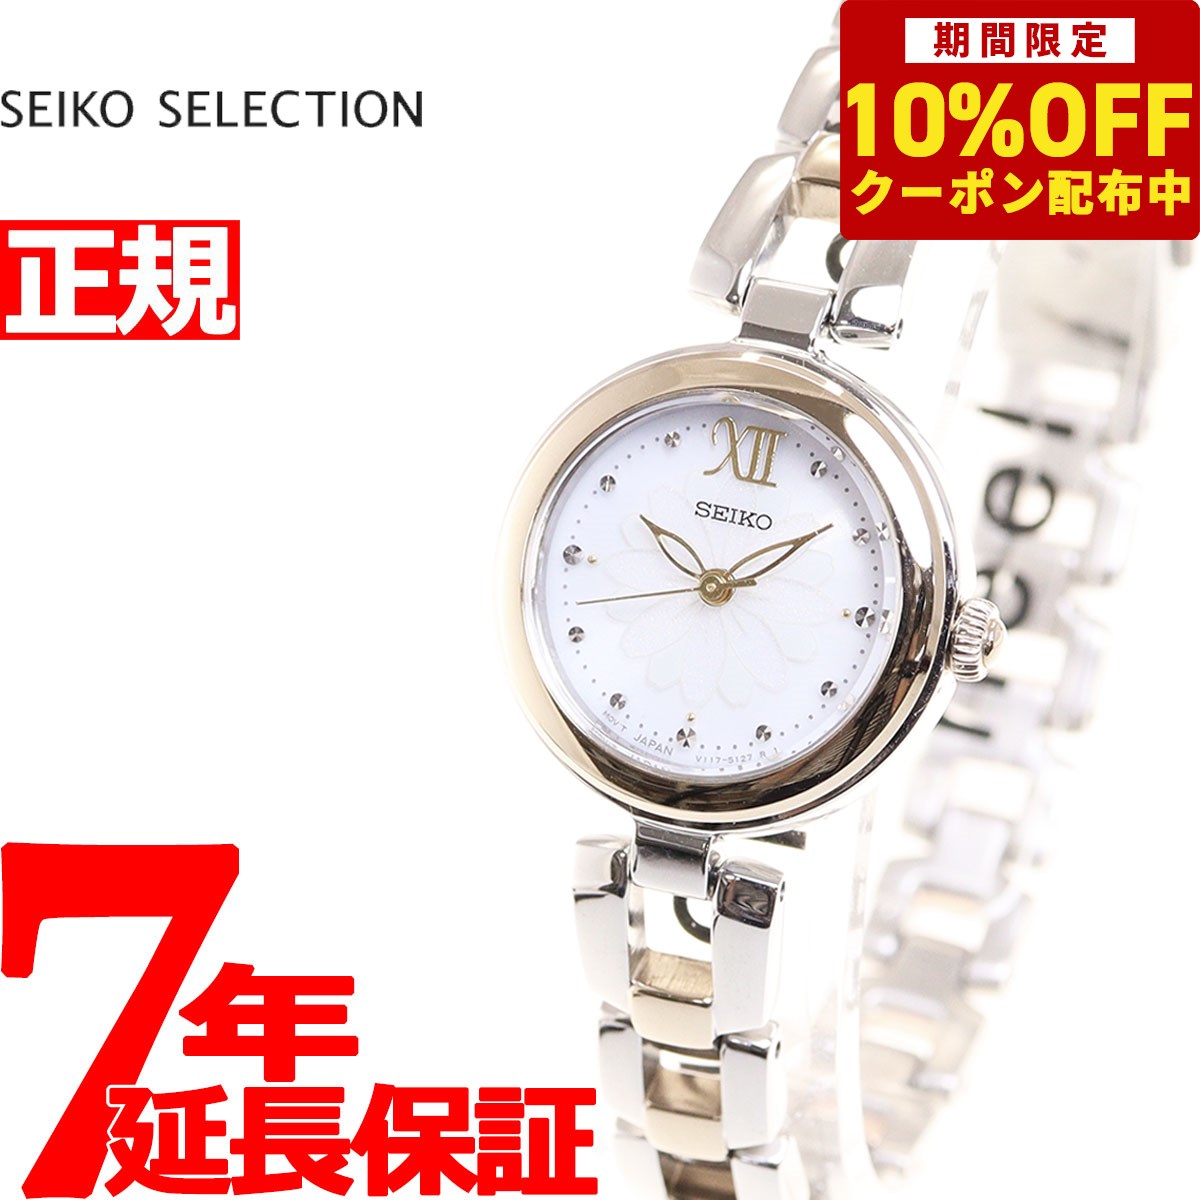 セイコー セレクション フラワーモチーフモデル デイジー SWFA198 レディース 腕時計 ソーラー シャンパンゴールド シルバー SEIKO SELECTION